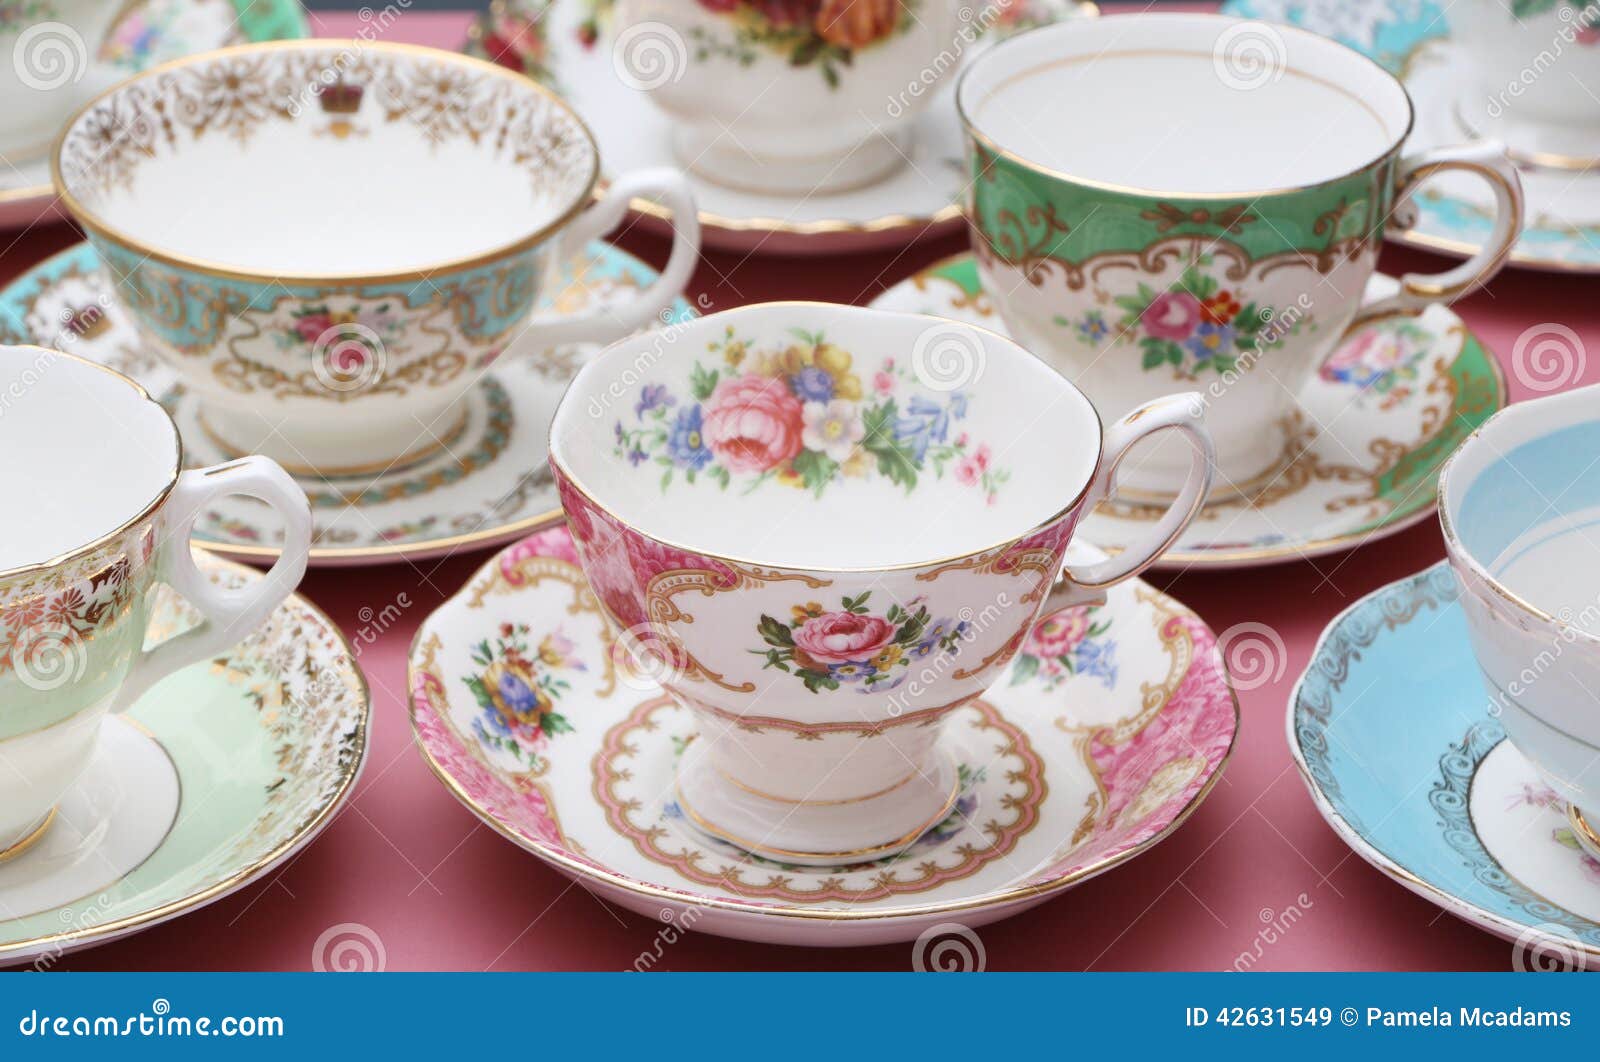 tazas de te vintage - Buscar con Google  Tea cups, Tea cups vintage,  Vintage tea